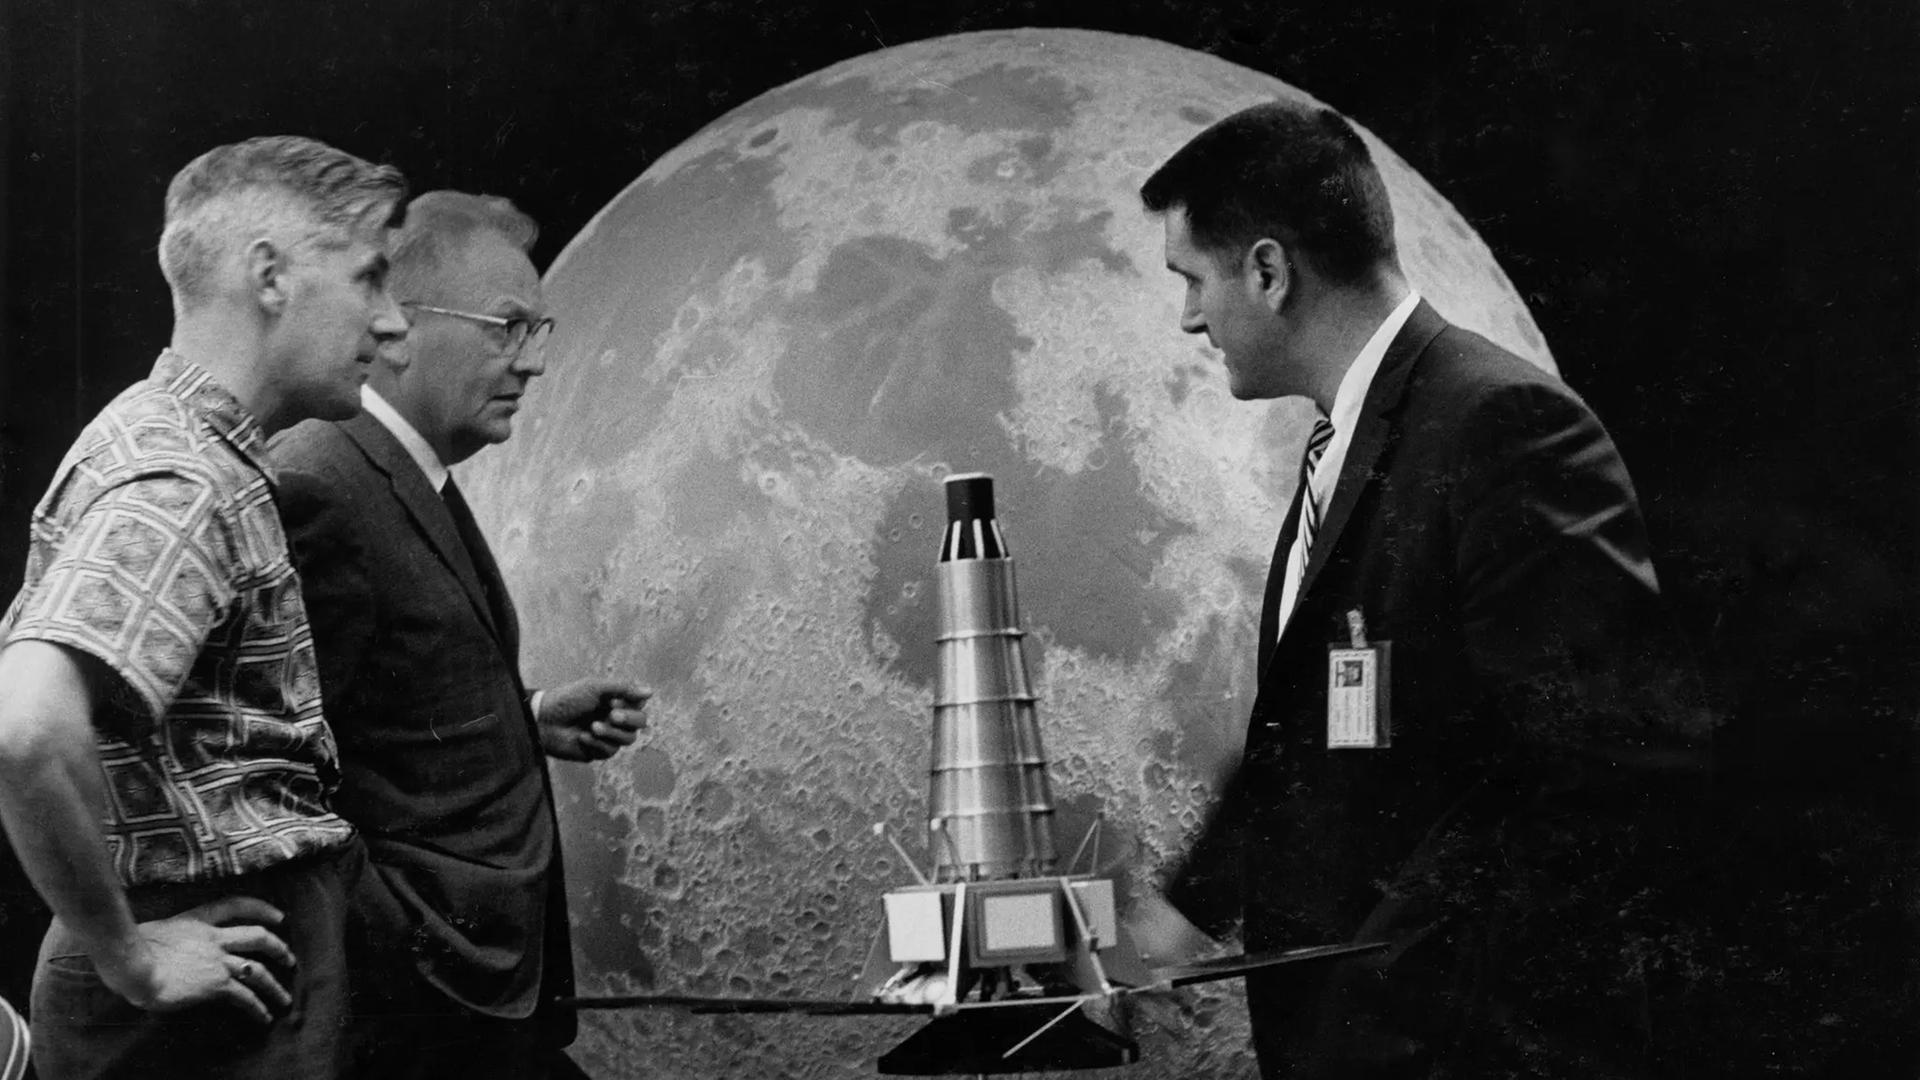 Ewen Whitaker (links) sucht mit Gerard Kuiper und Raymond Heacock (rechts) von der NASA Landestellen auf dem Mond aus. 